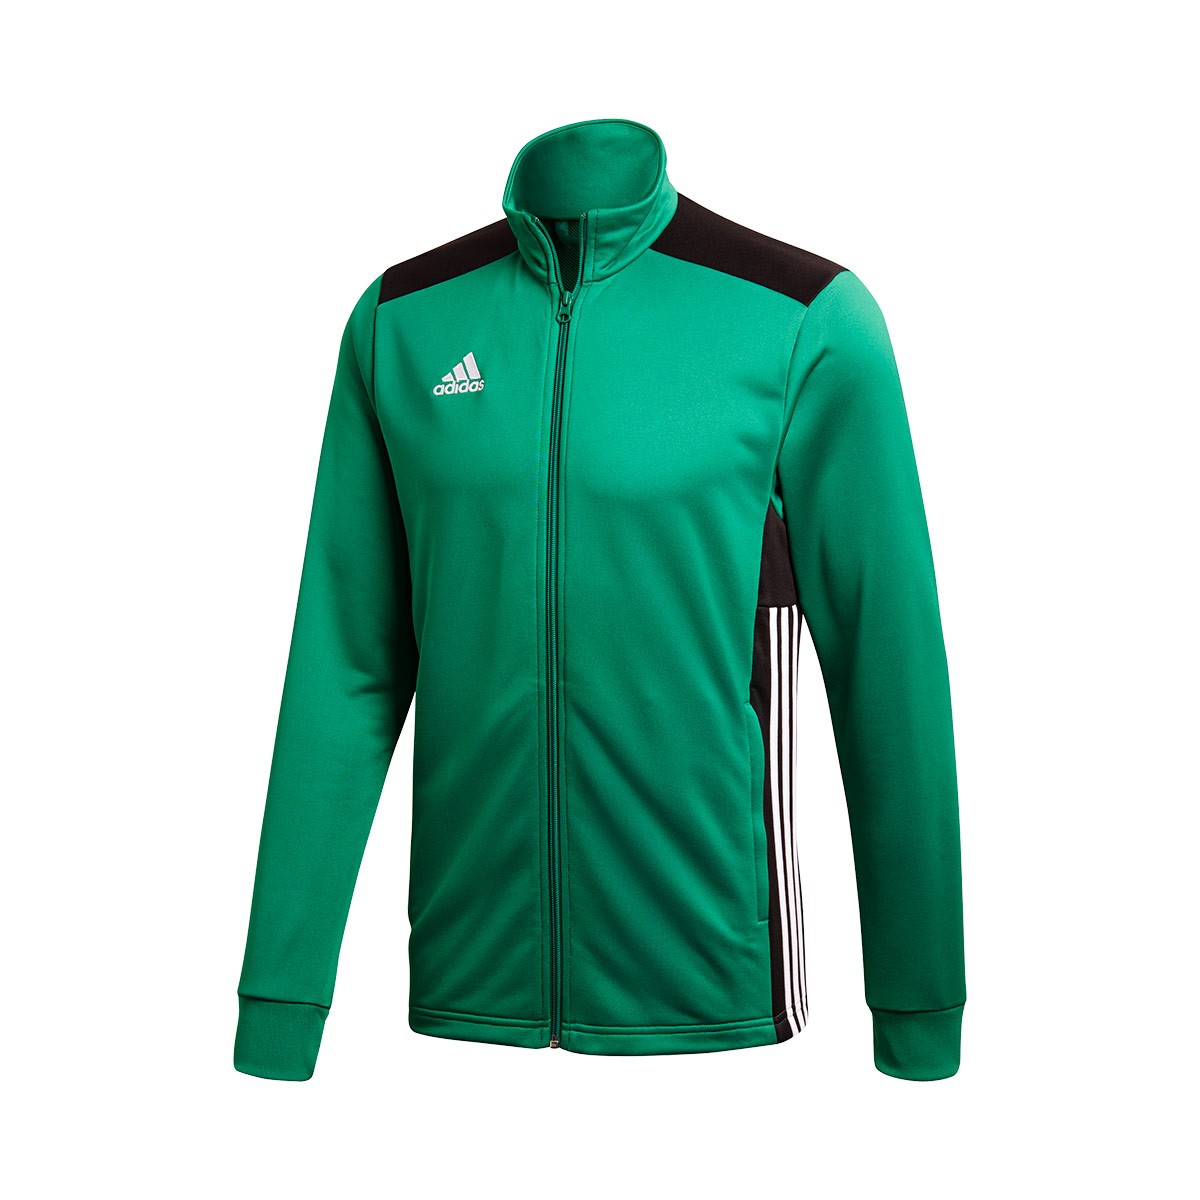 adidas green and black jacket